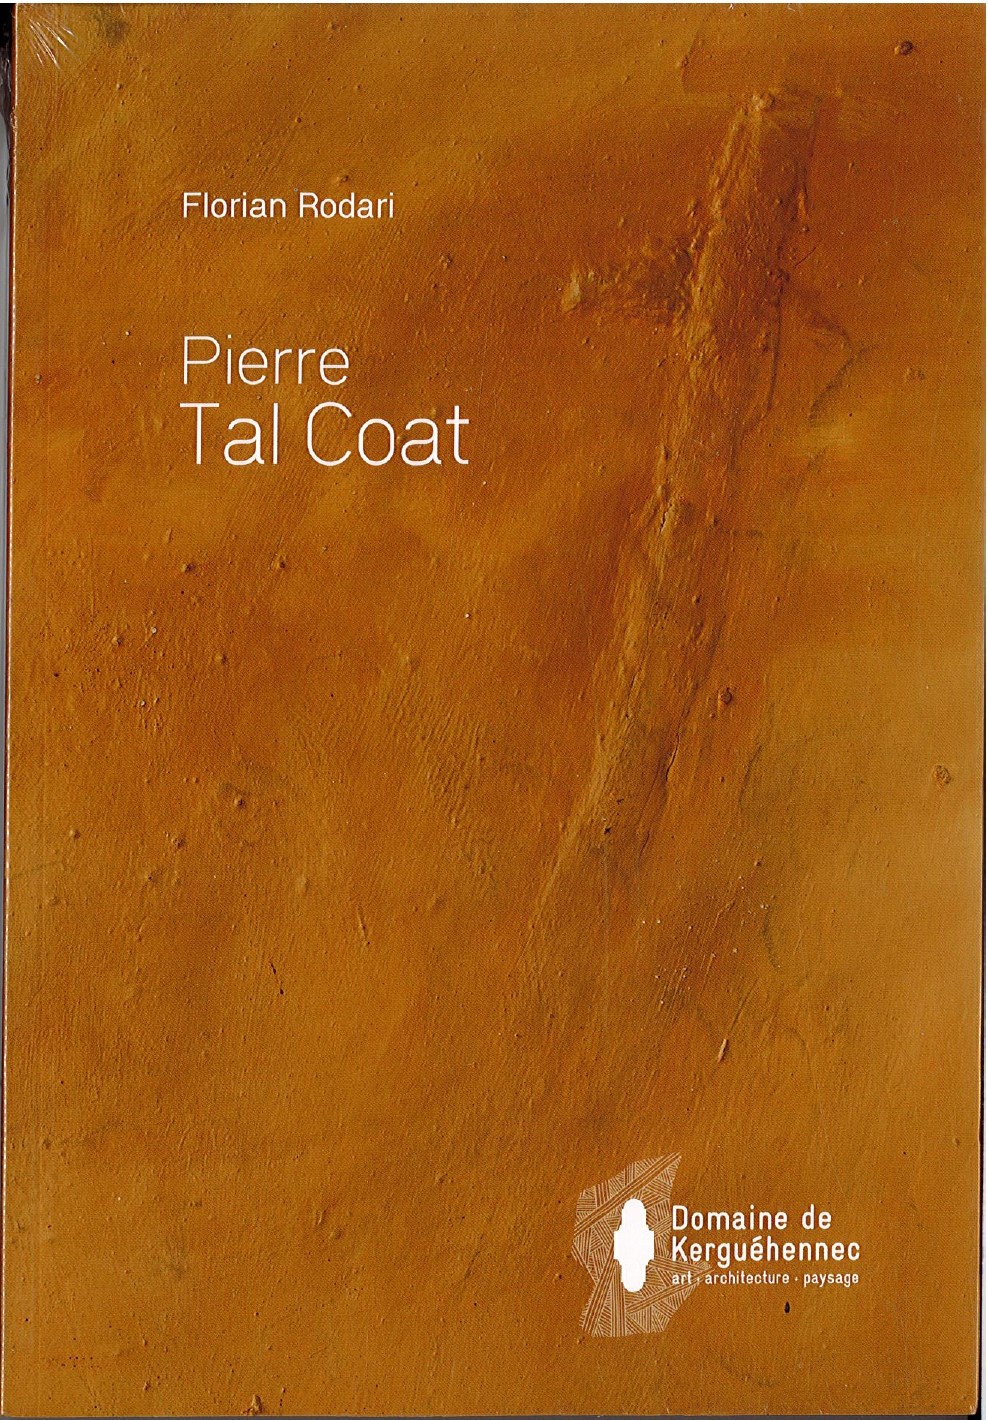 Pierre Tal Coat